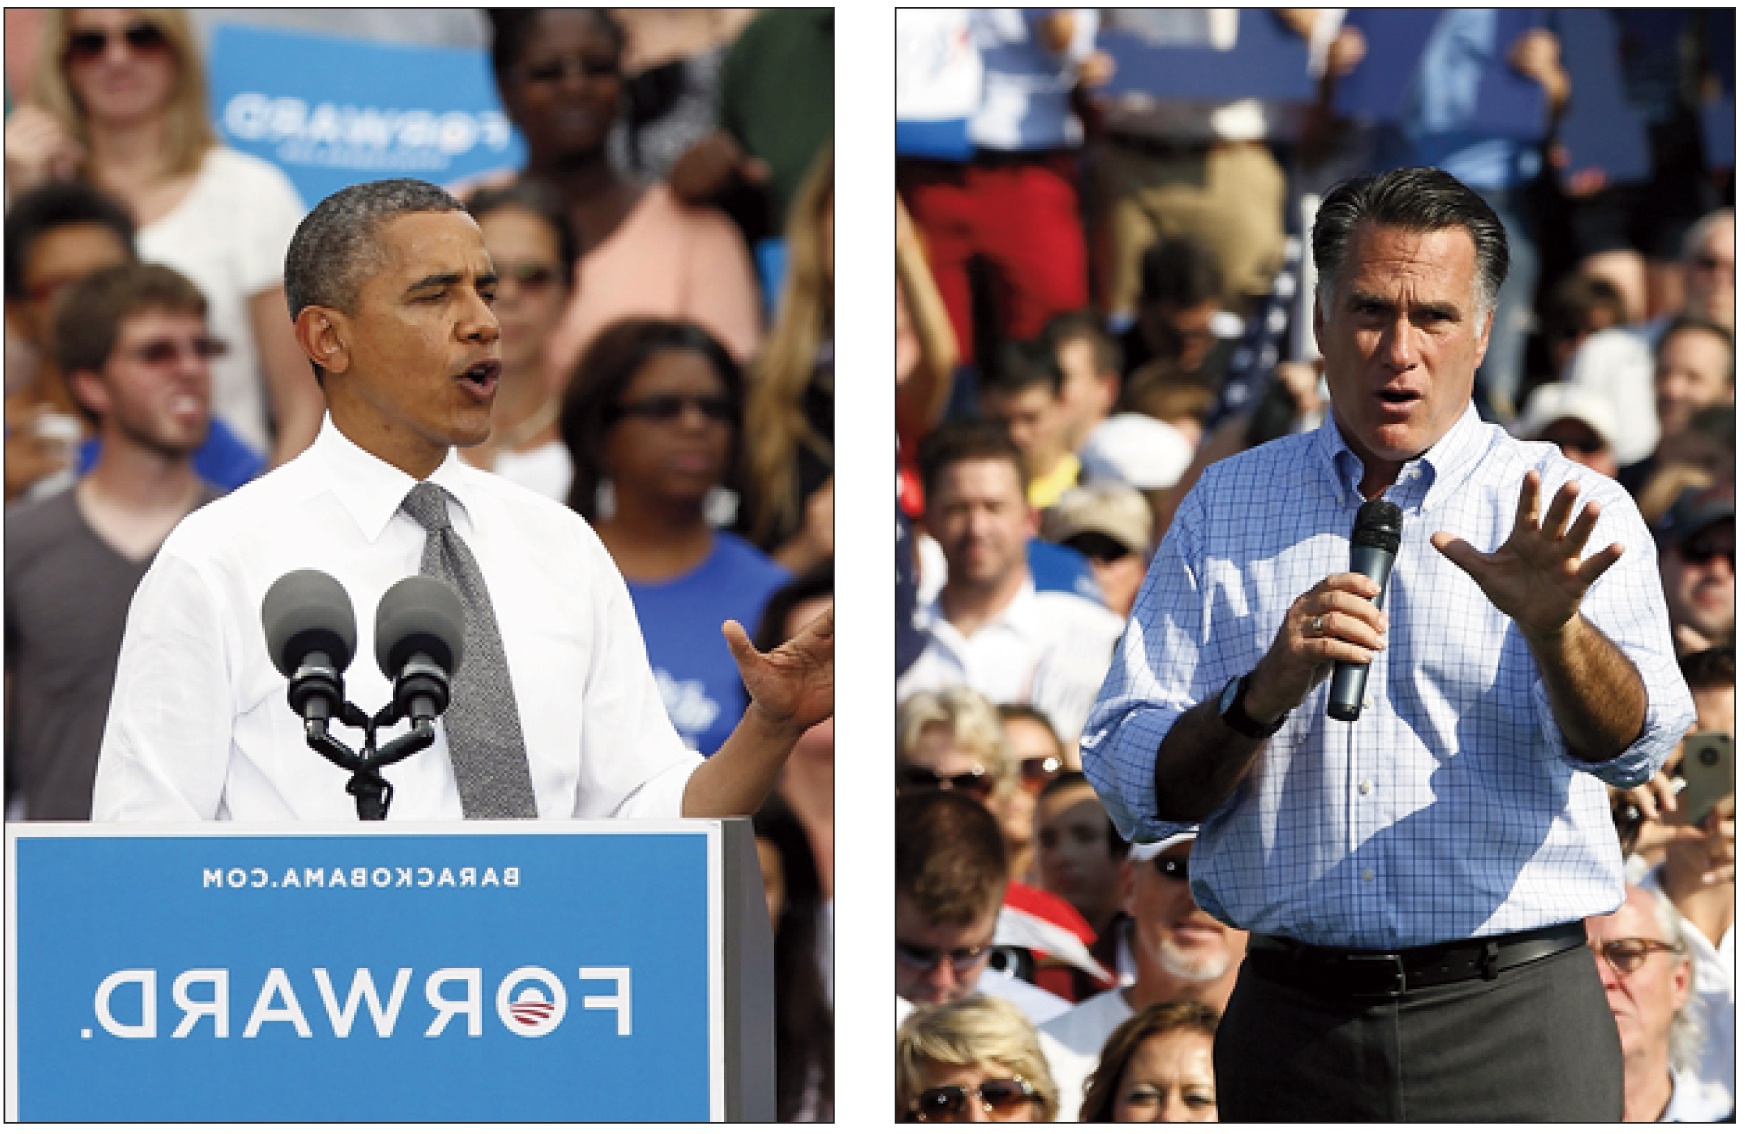 Obama vs. Romney, cea mai scumpă campanie prezidenţială din istoria SUA. Cei doi candidaţi vor strânge de la suporteri 2 mld. dolari până la alegeri